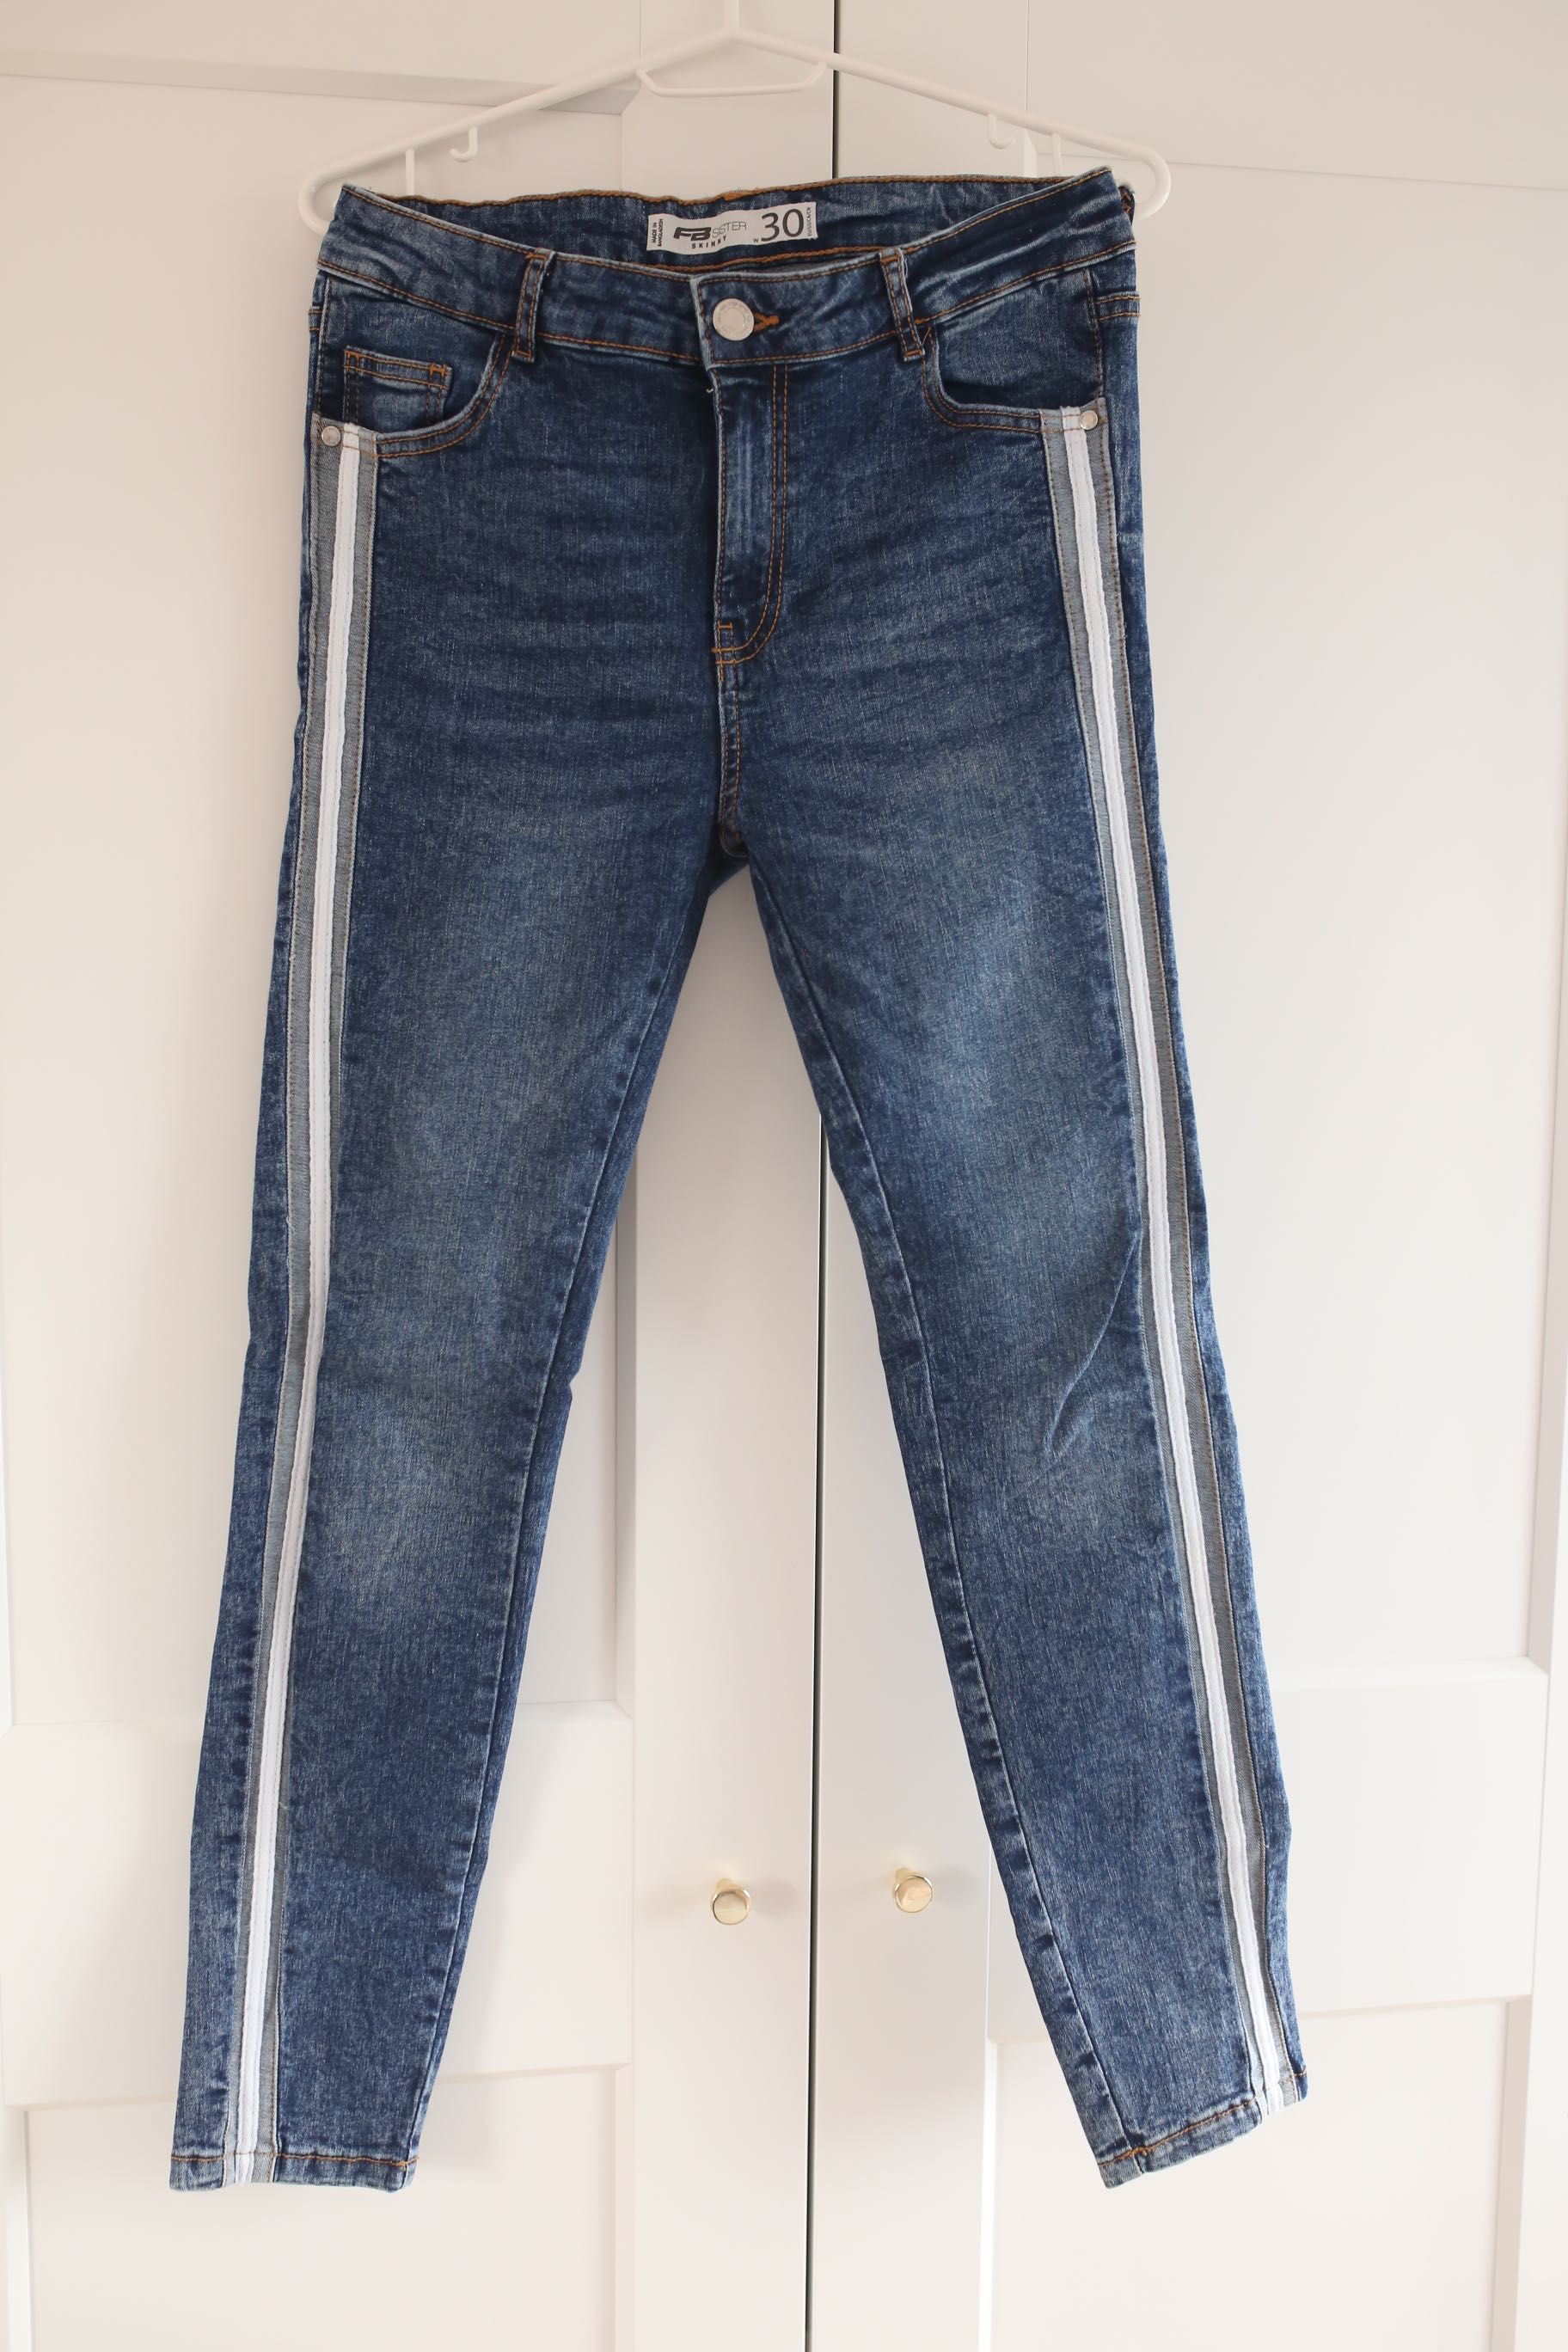 New Yorker - spodnie jeansowe marmurkowe z lampasami 30W